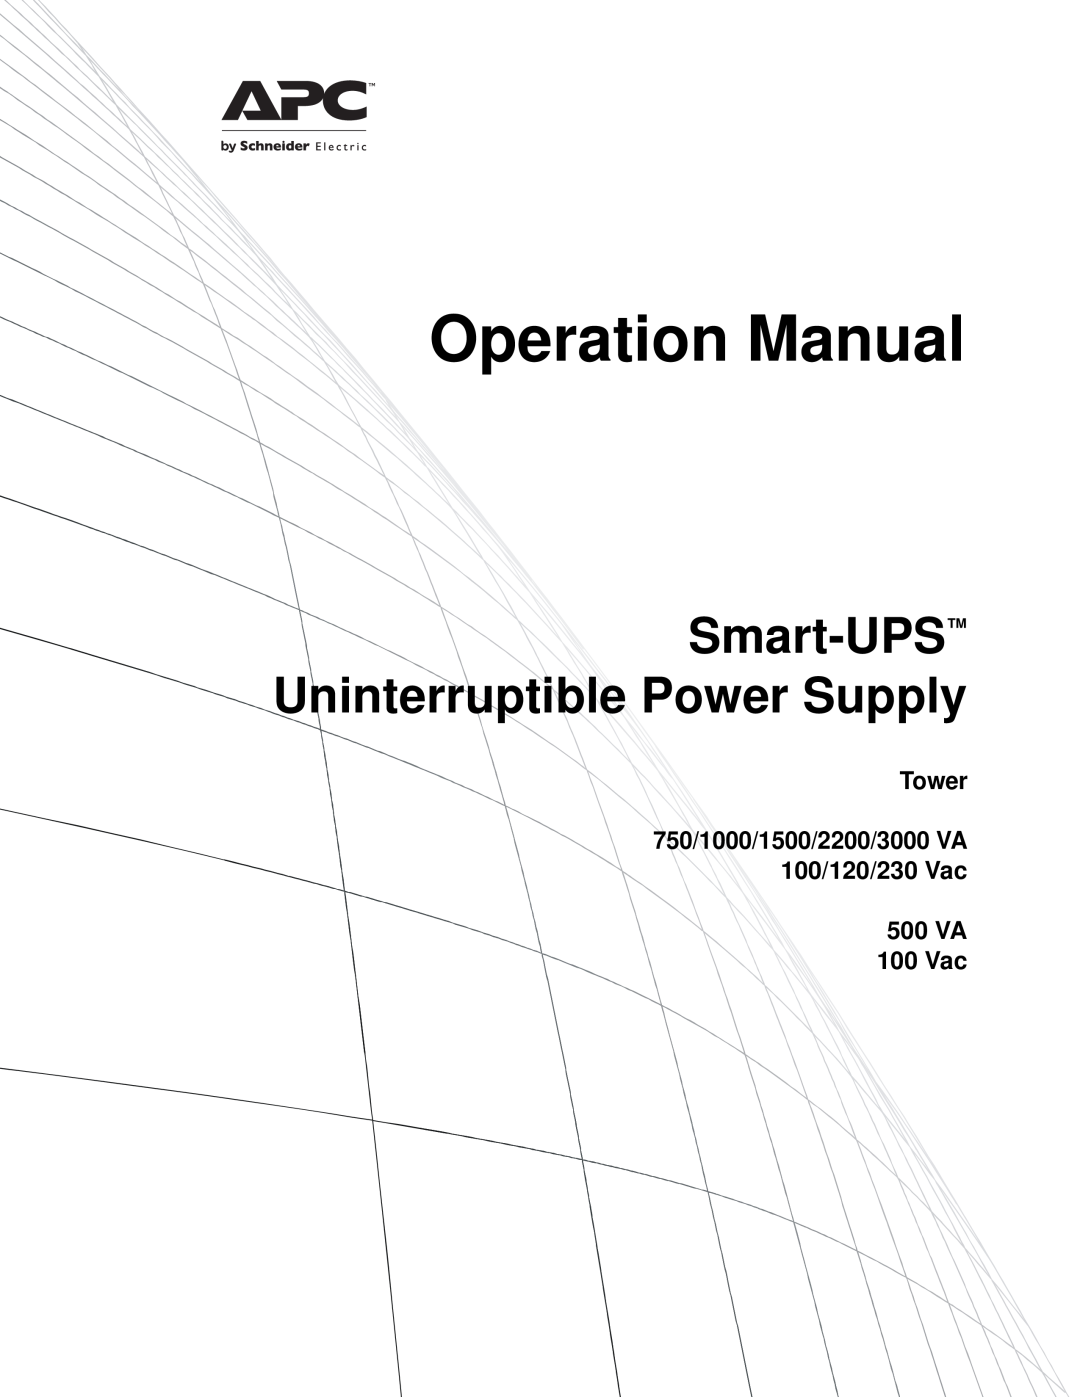 TRENDnet SMT1000 operation manual Smart-UPS Uninterruptible Power Supply, Tower, 500 VA 100 Vac 